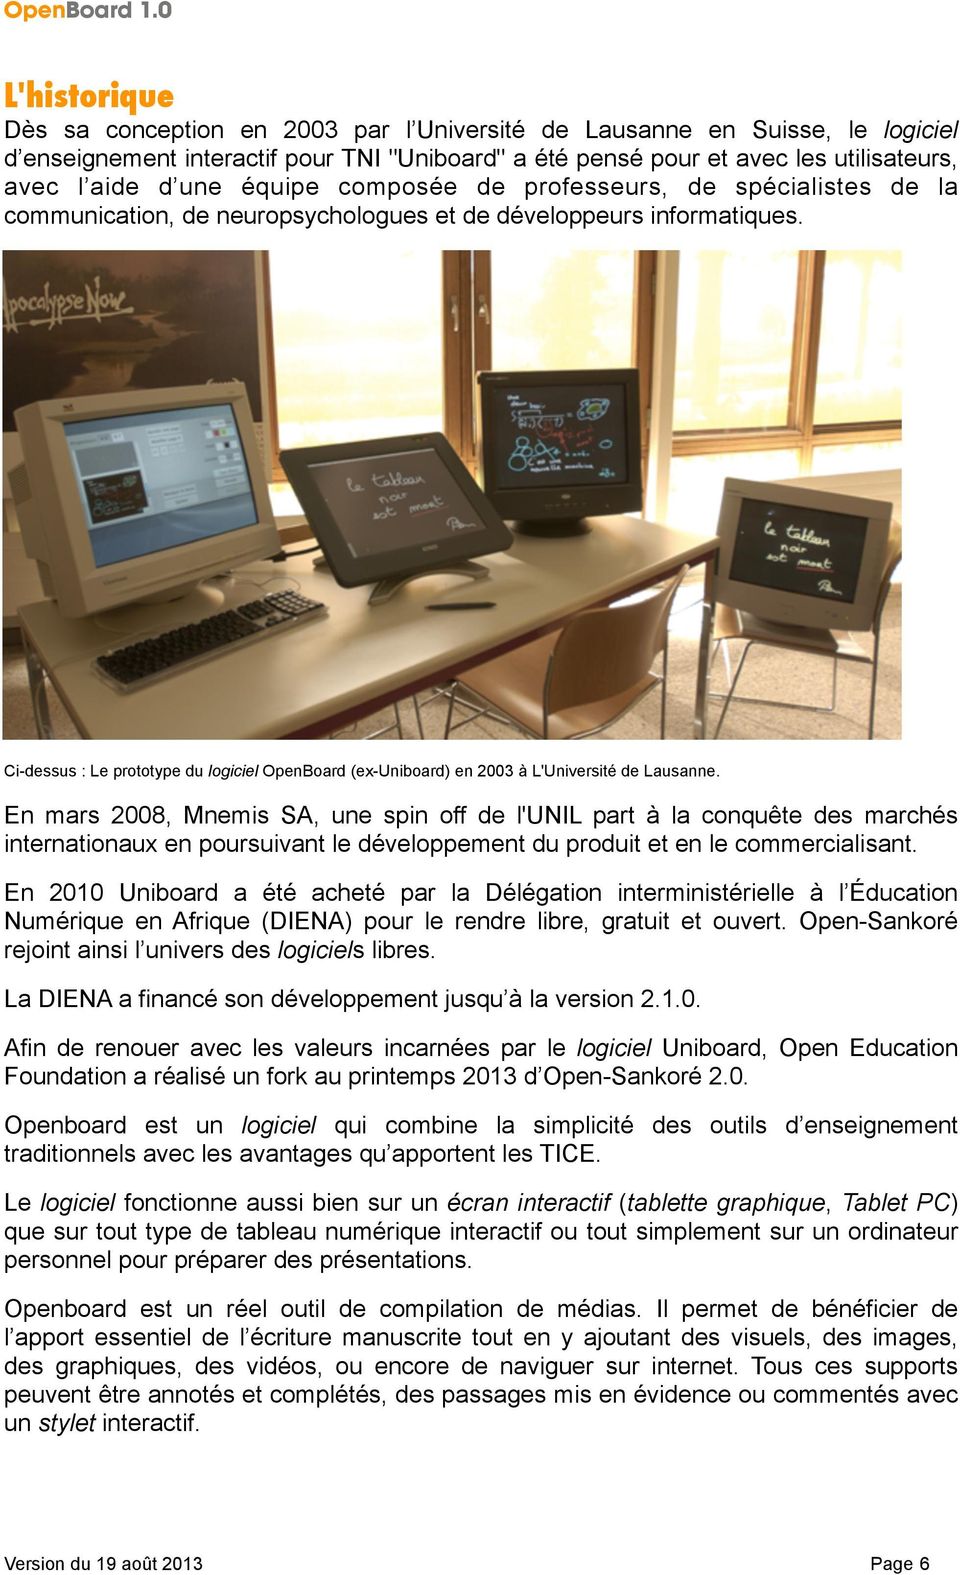 Ci-dessus : Le prototype du logiciel OpenBoard (ex-uniboard) en 2003 à L'Université de Lausanne.